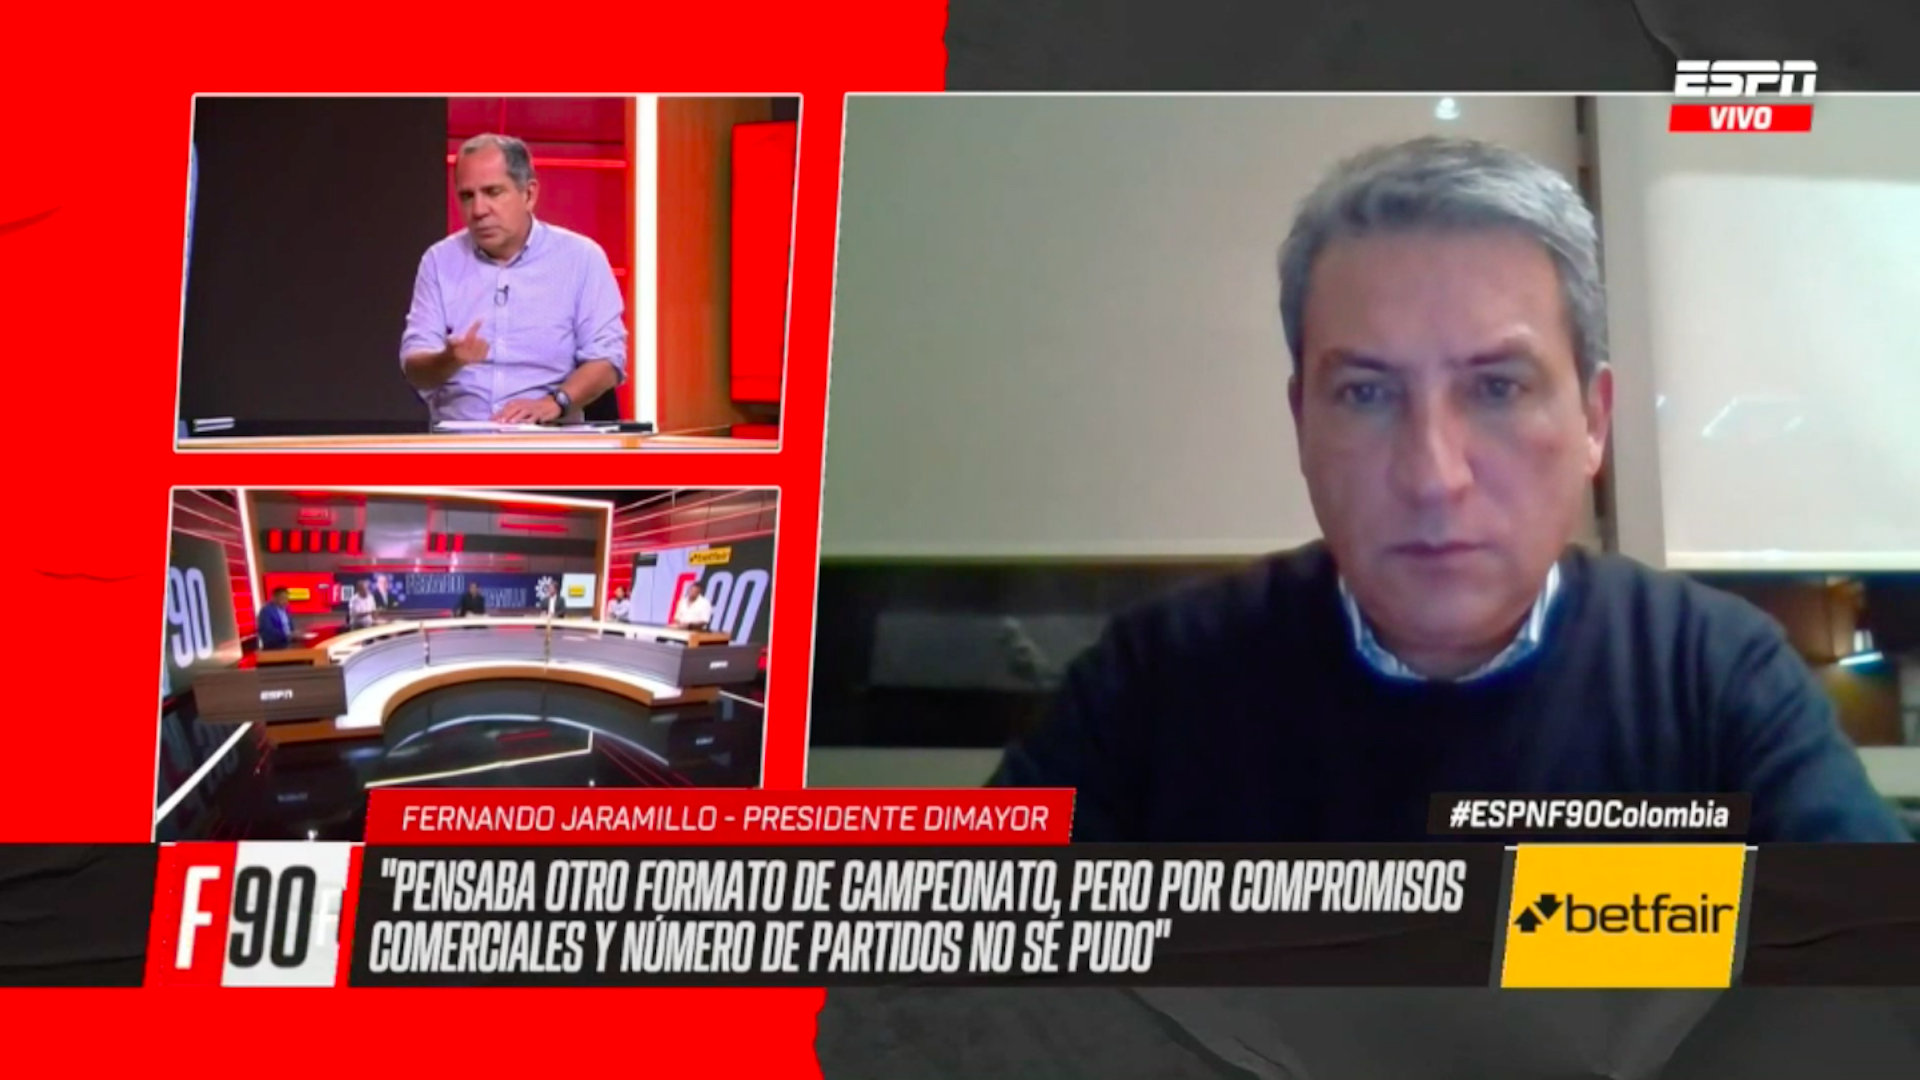 “Hay que revisar el sistema del campeonato”: Fernando Jaramillo, presidente de la Dimayor